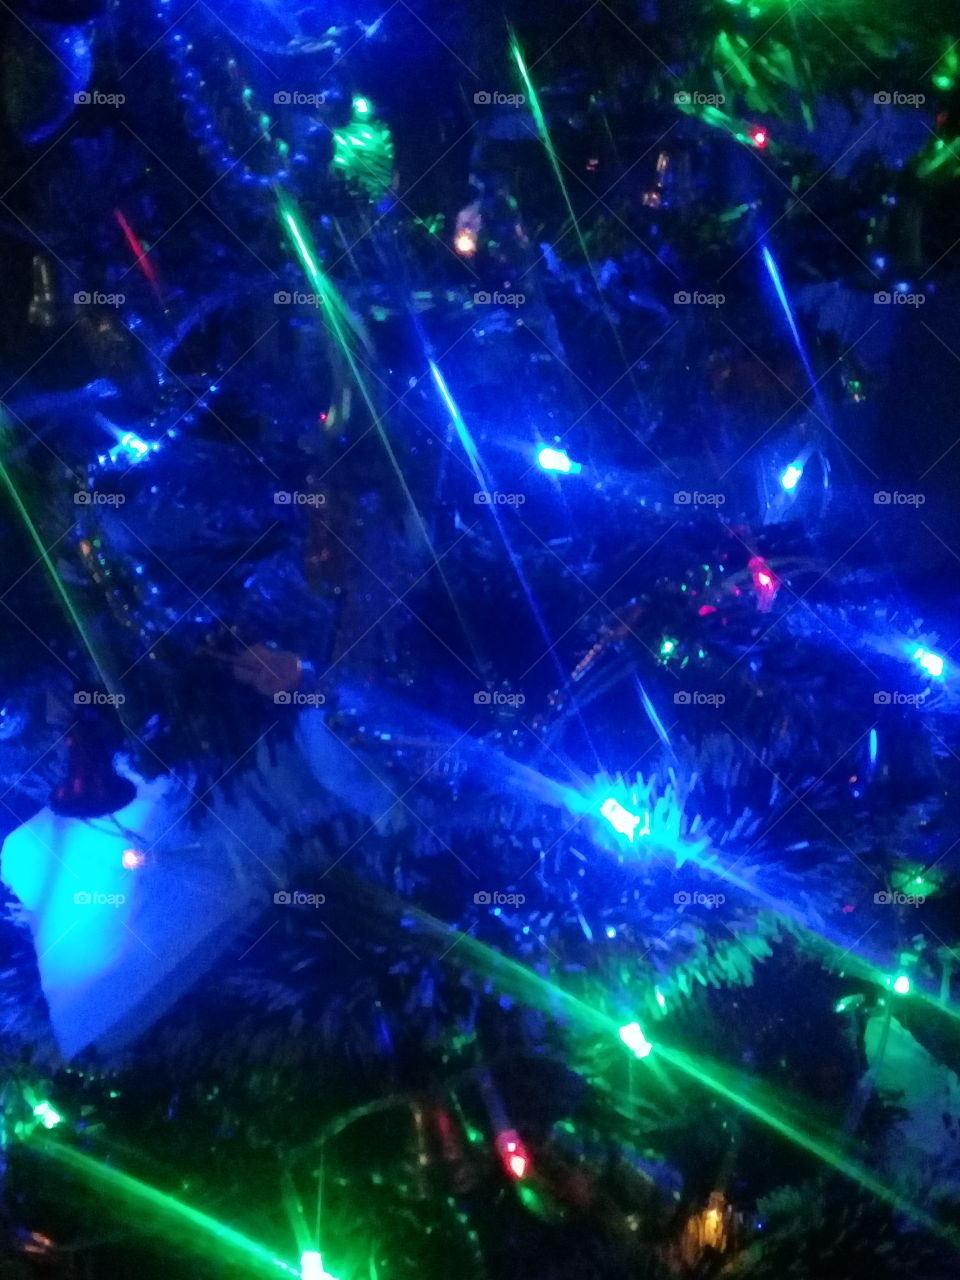 luces navideñas en azul y verde encendidas sobre una pared oscura en una habitación sin iluminación de ningún tipo.